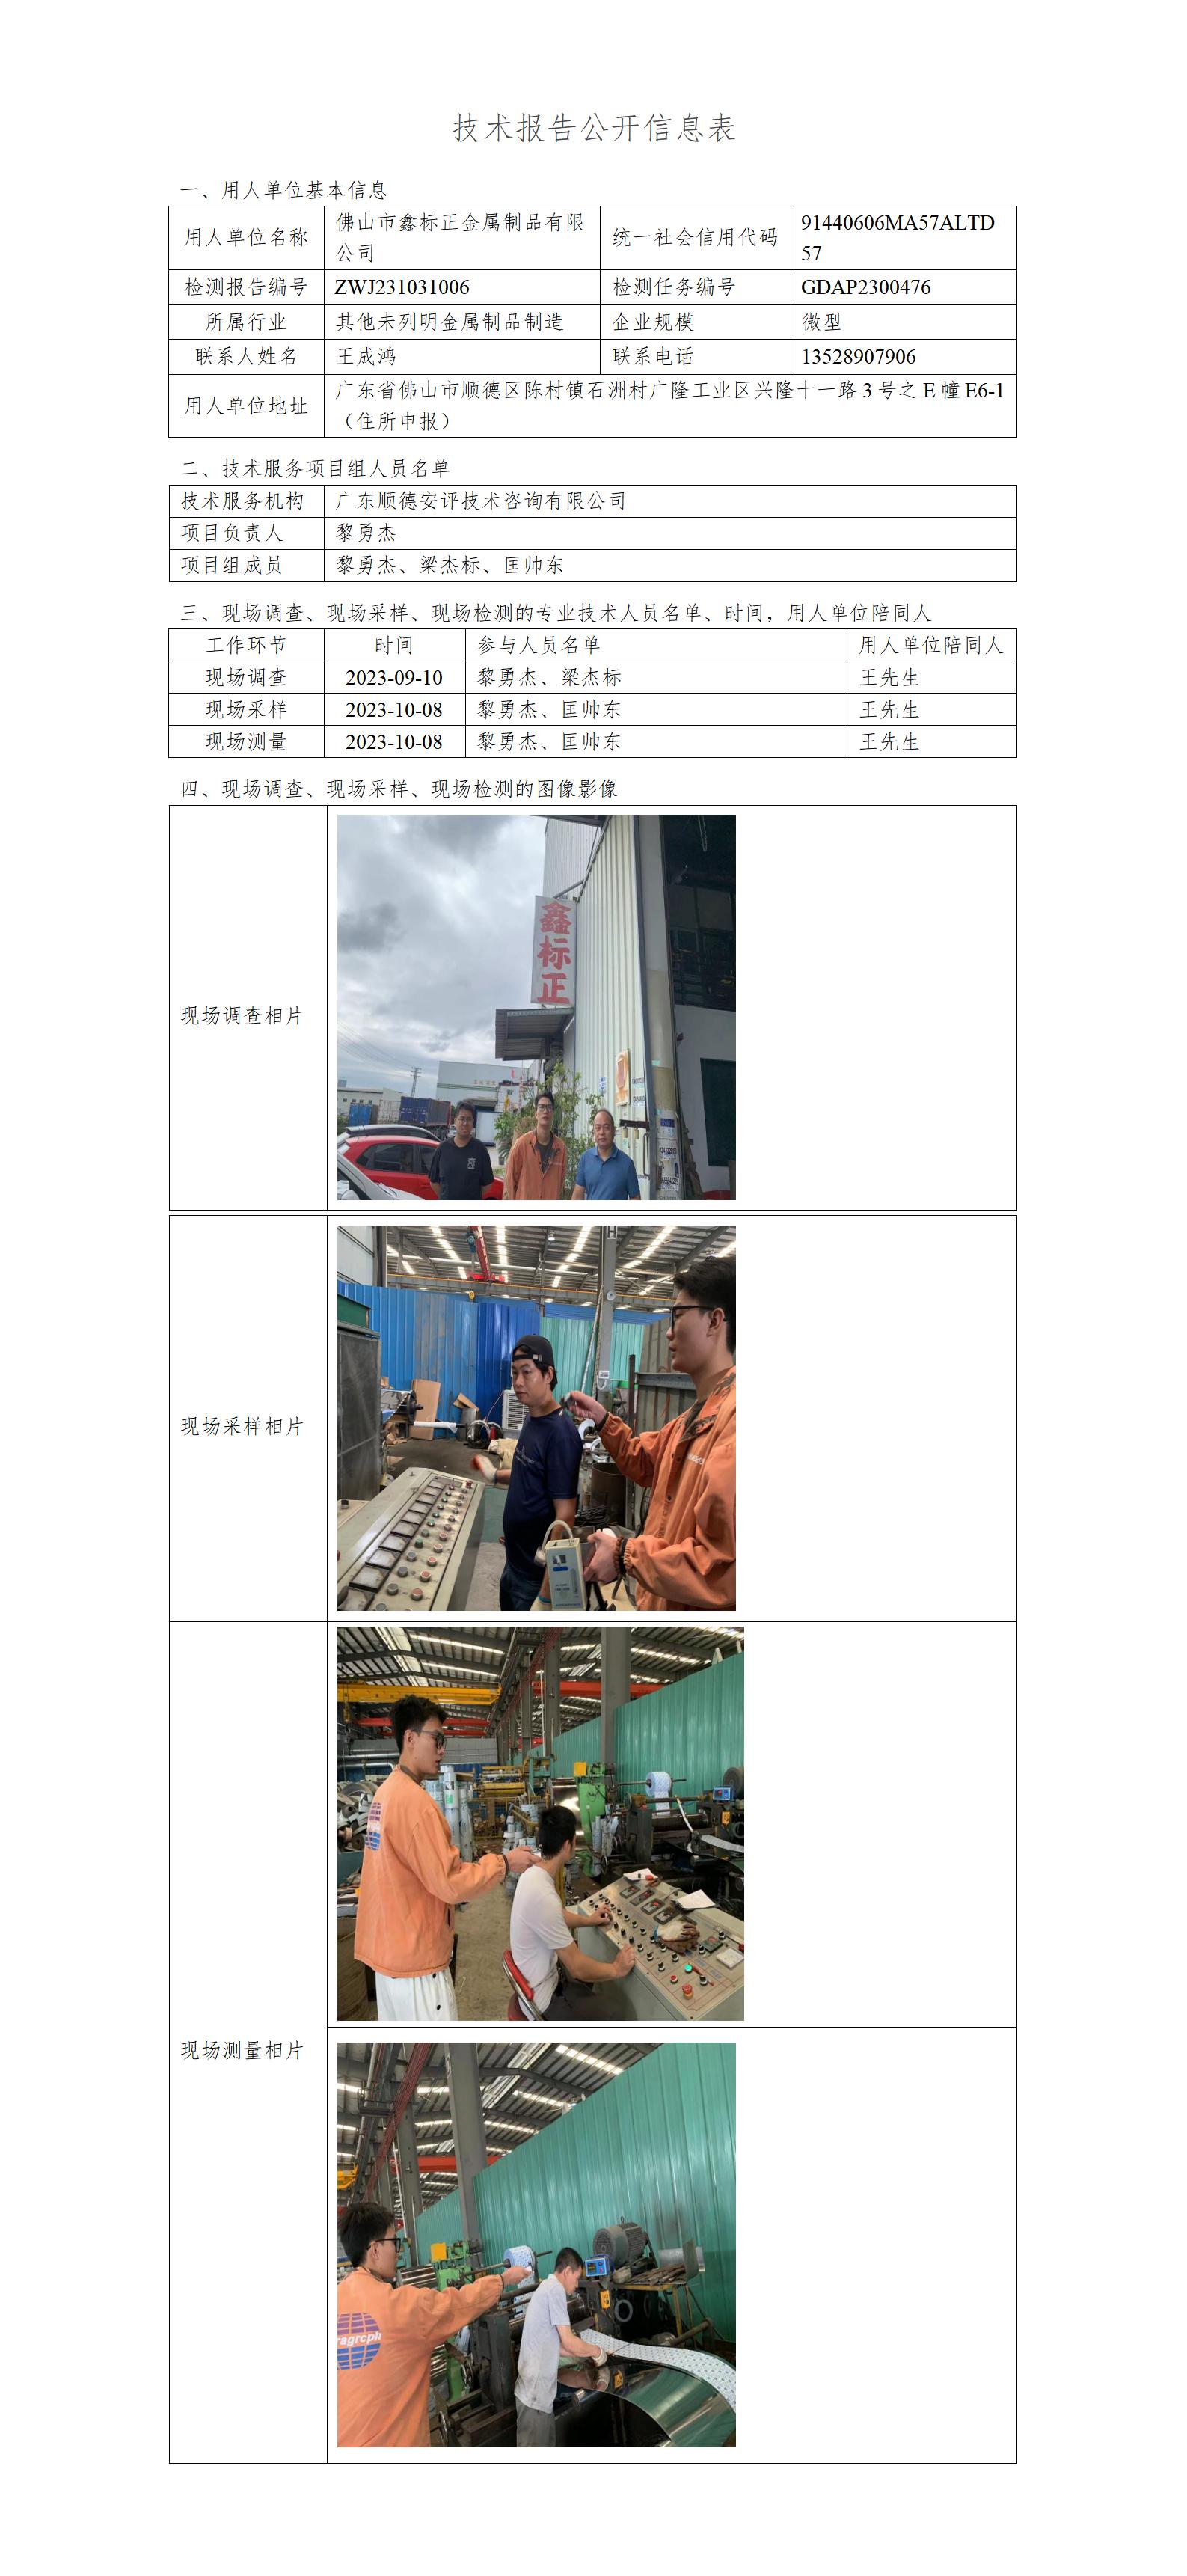 佛山市鑫标正金属制品有限公司-2023-技术报告公开信息表_01.jpg